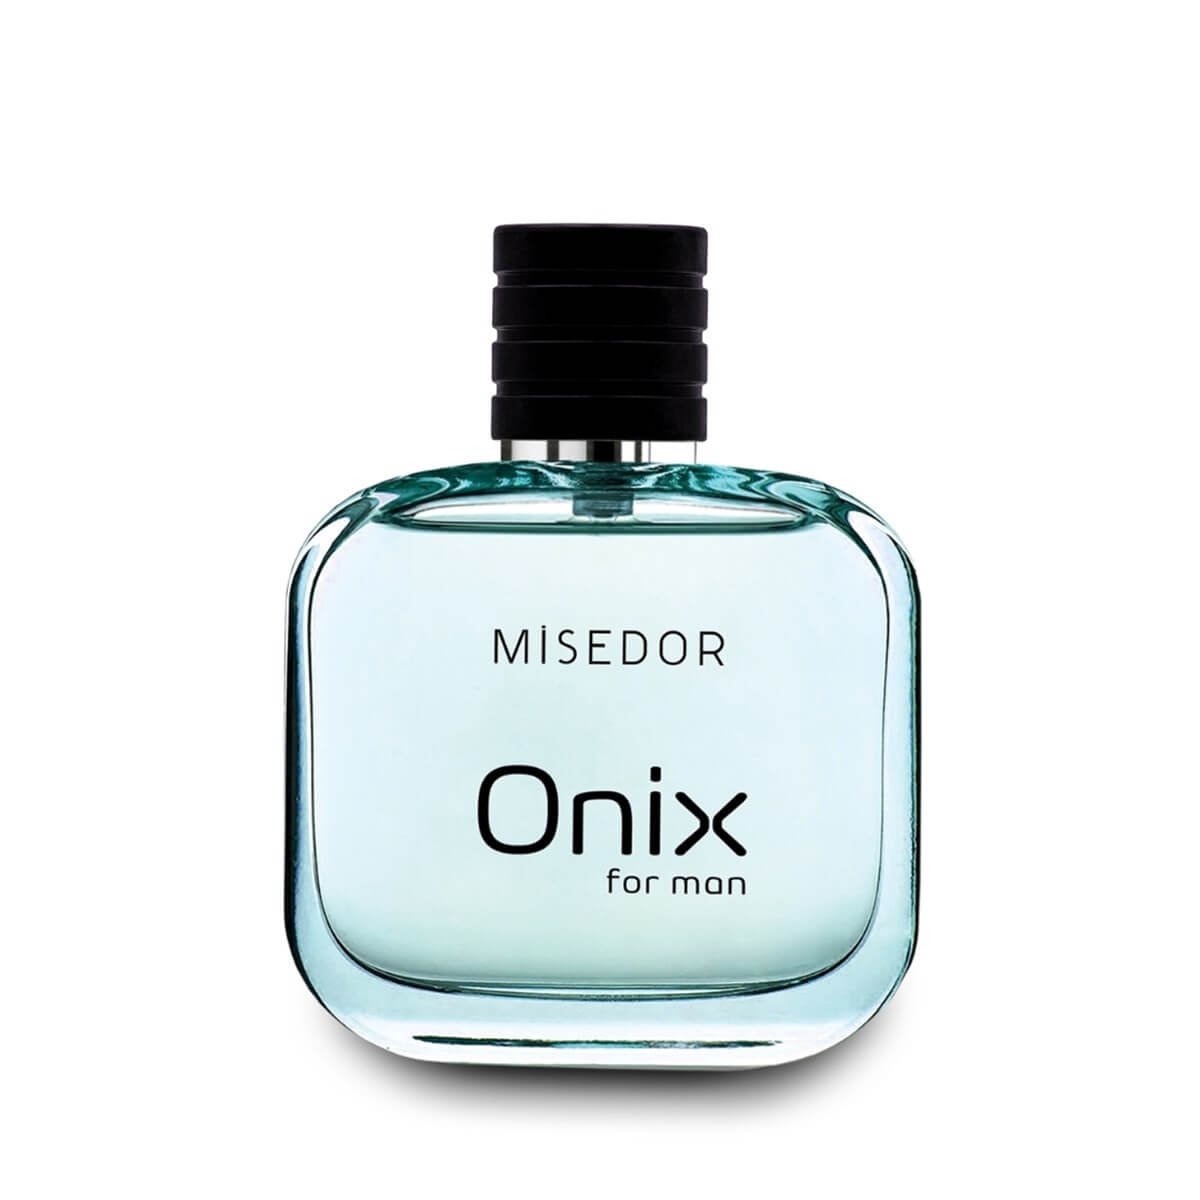 Misedor Onix Edp 100 ml Erkek Parfüm | Misedor